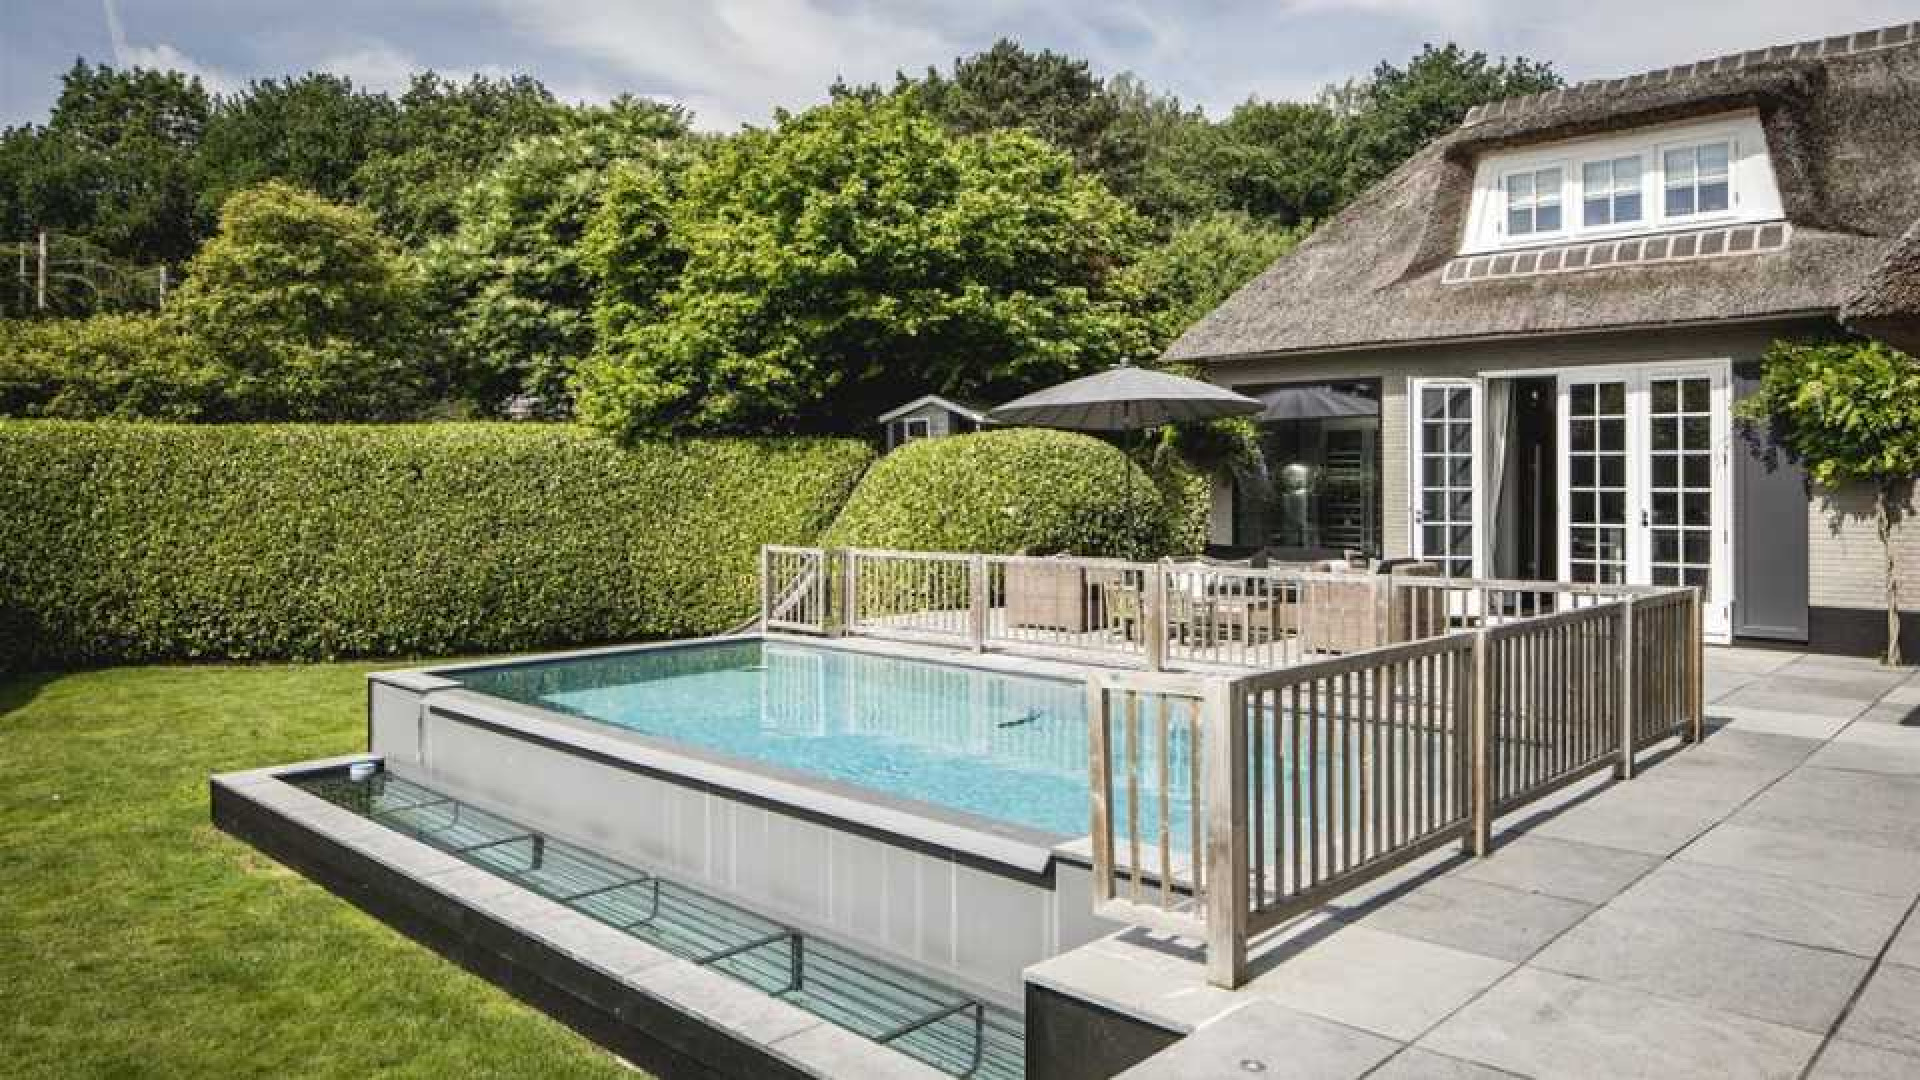 Winston en Renate Gerschtanowitz zetten hun villa met buiten zwembad te koop. Zie foto's